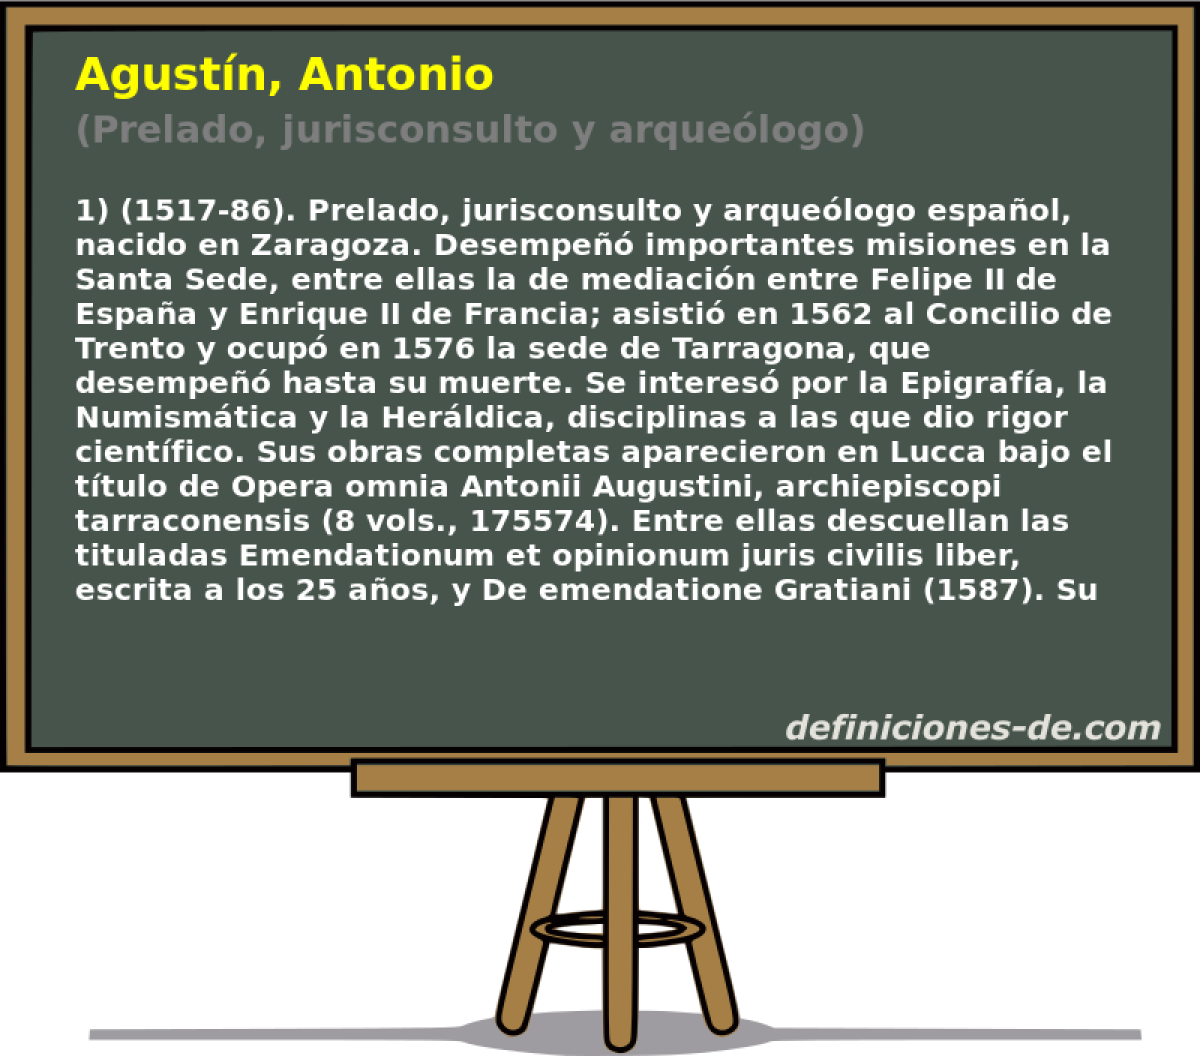 Agustn, Antonio (Prelado, jurisconsulto y arquelogo)